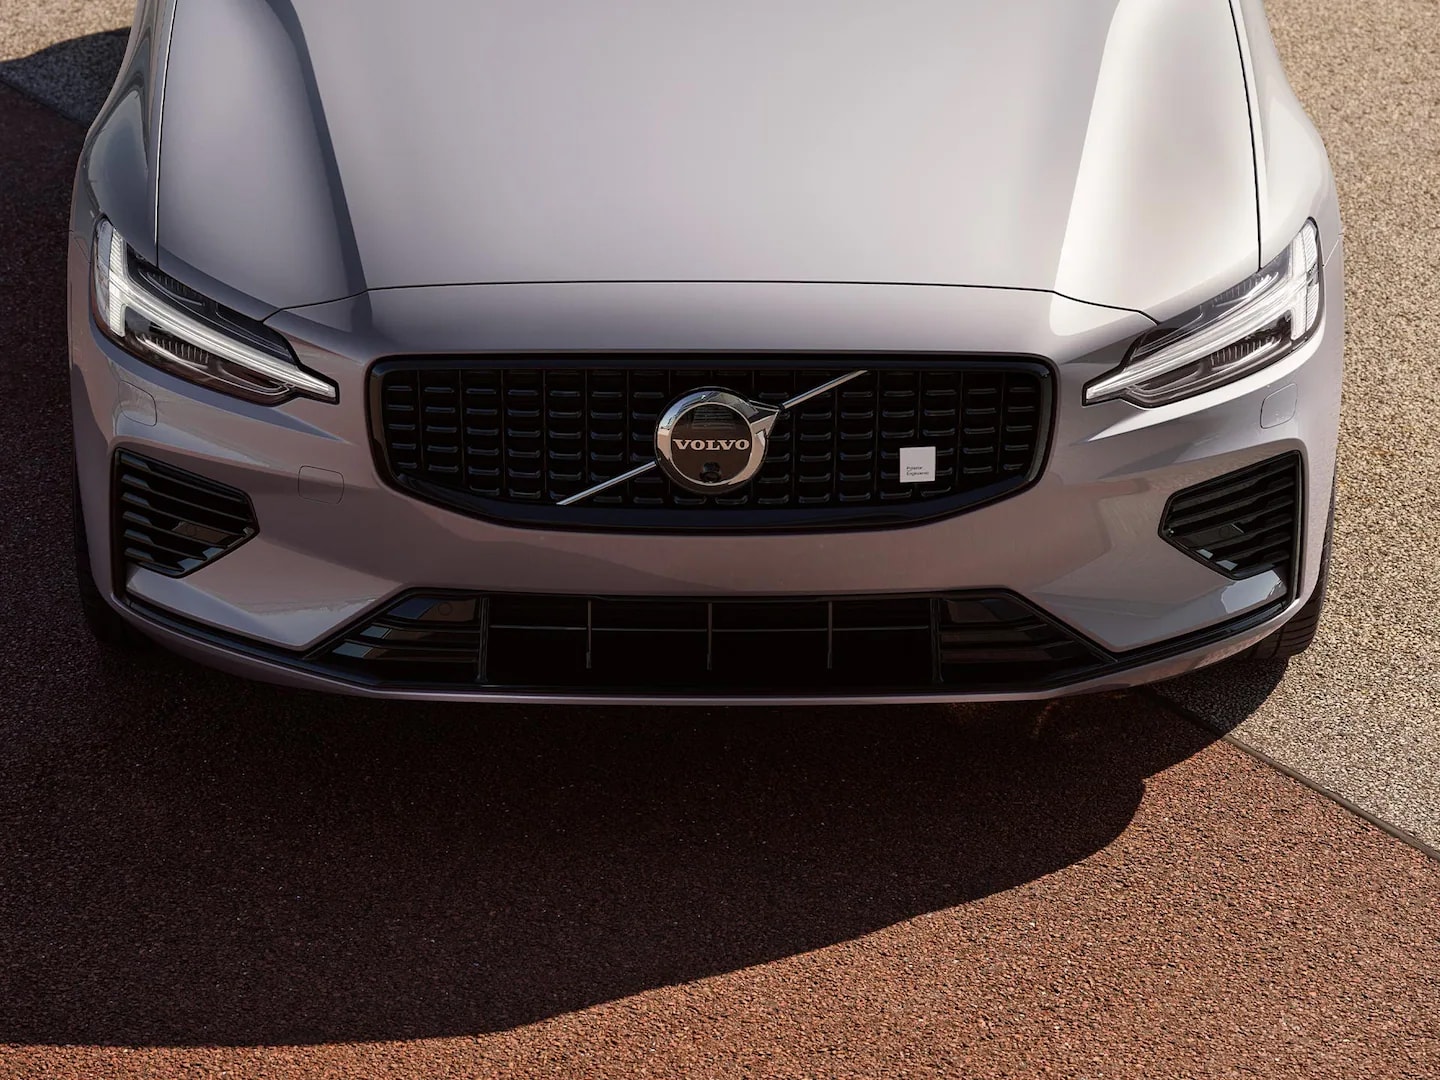 Detalles de diseño exterior renovados del Volvo V60 Recharge.